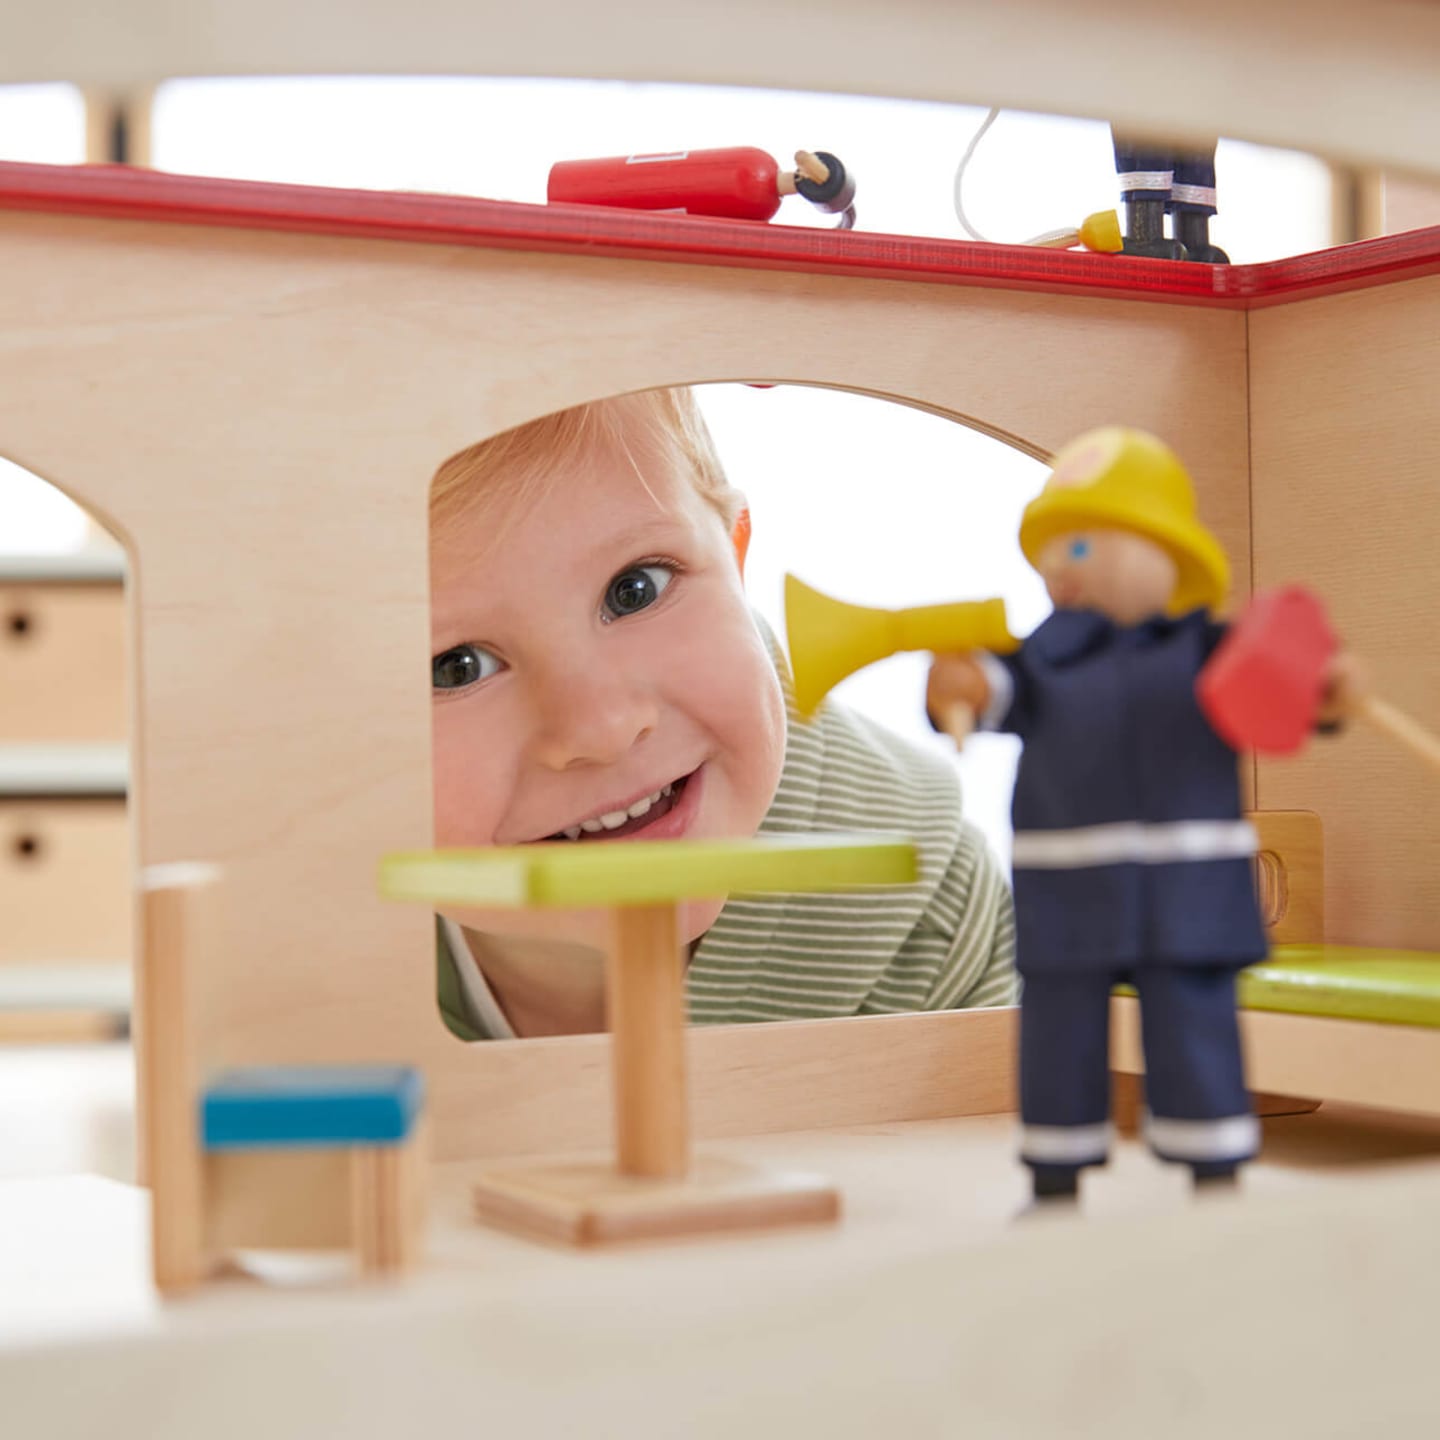 Kliniken | 2 | Image | Kind schaut in Puppenhaus mit Playmobil Feuerwehrfigur